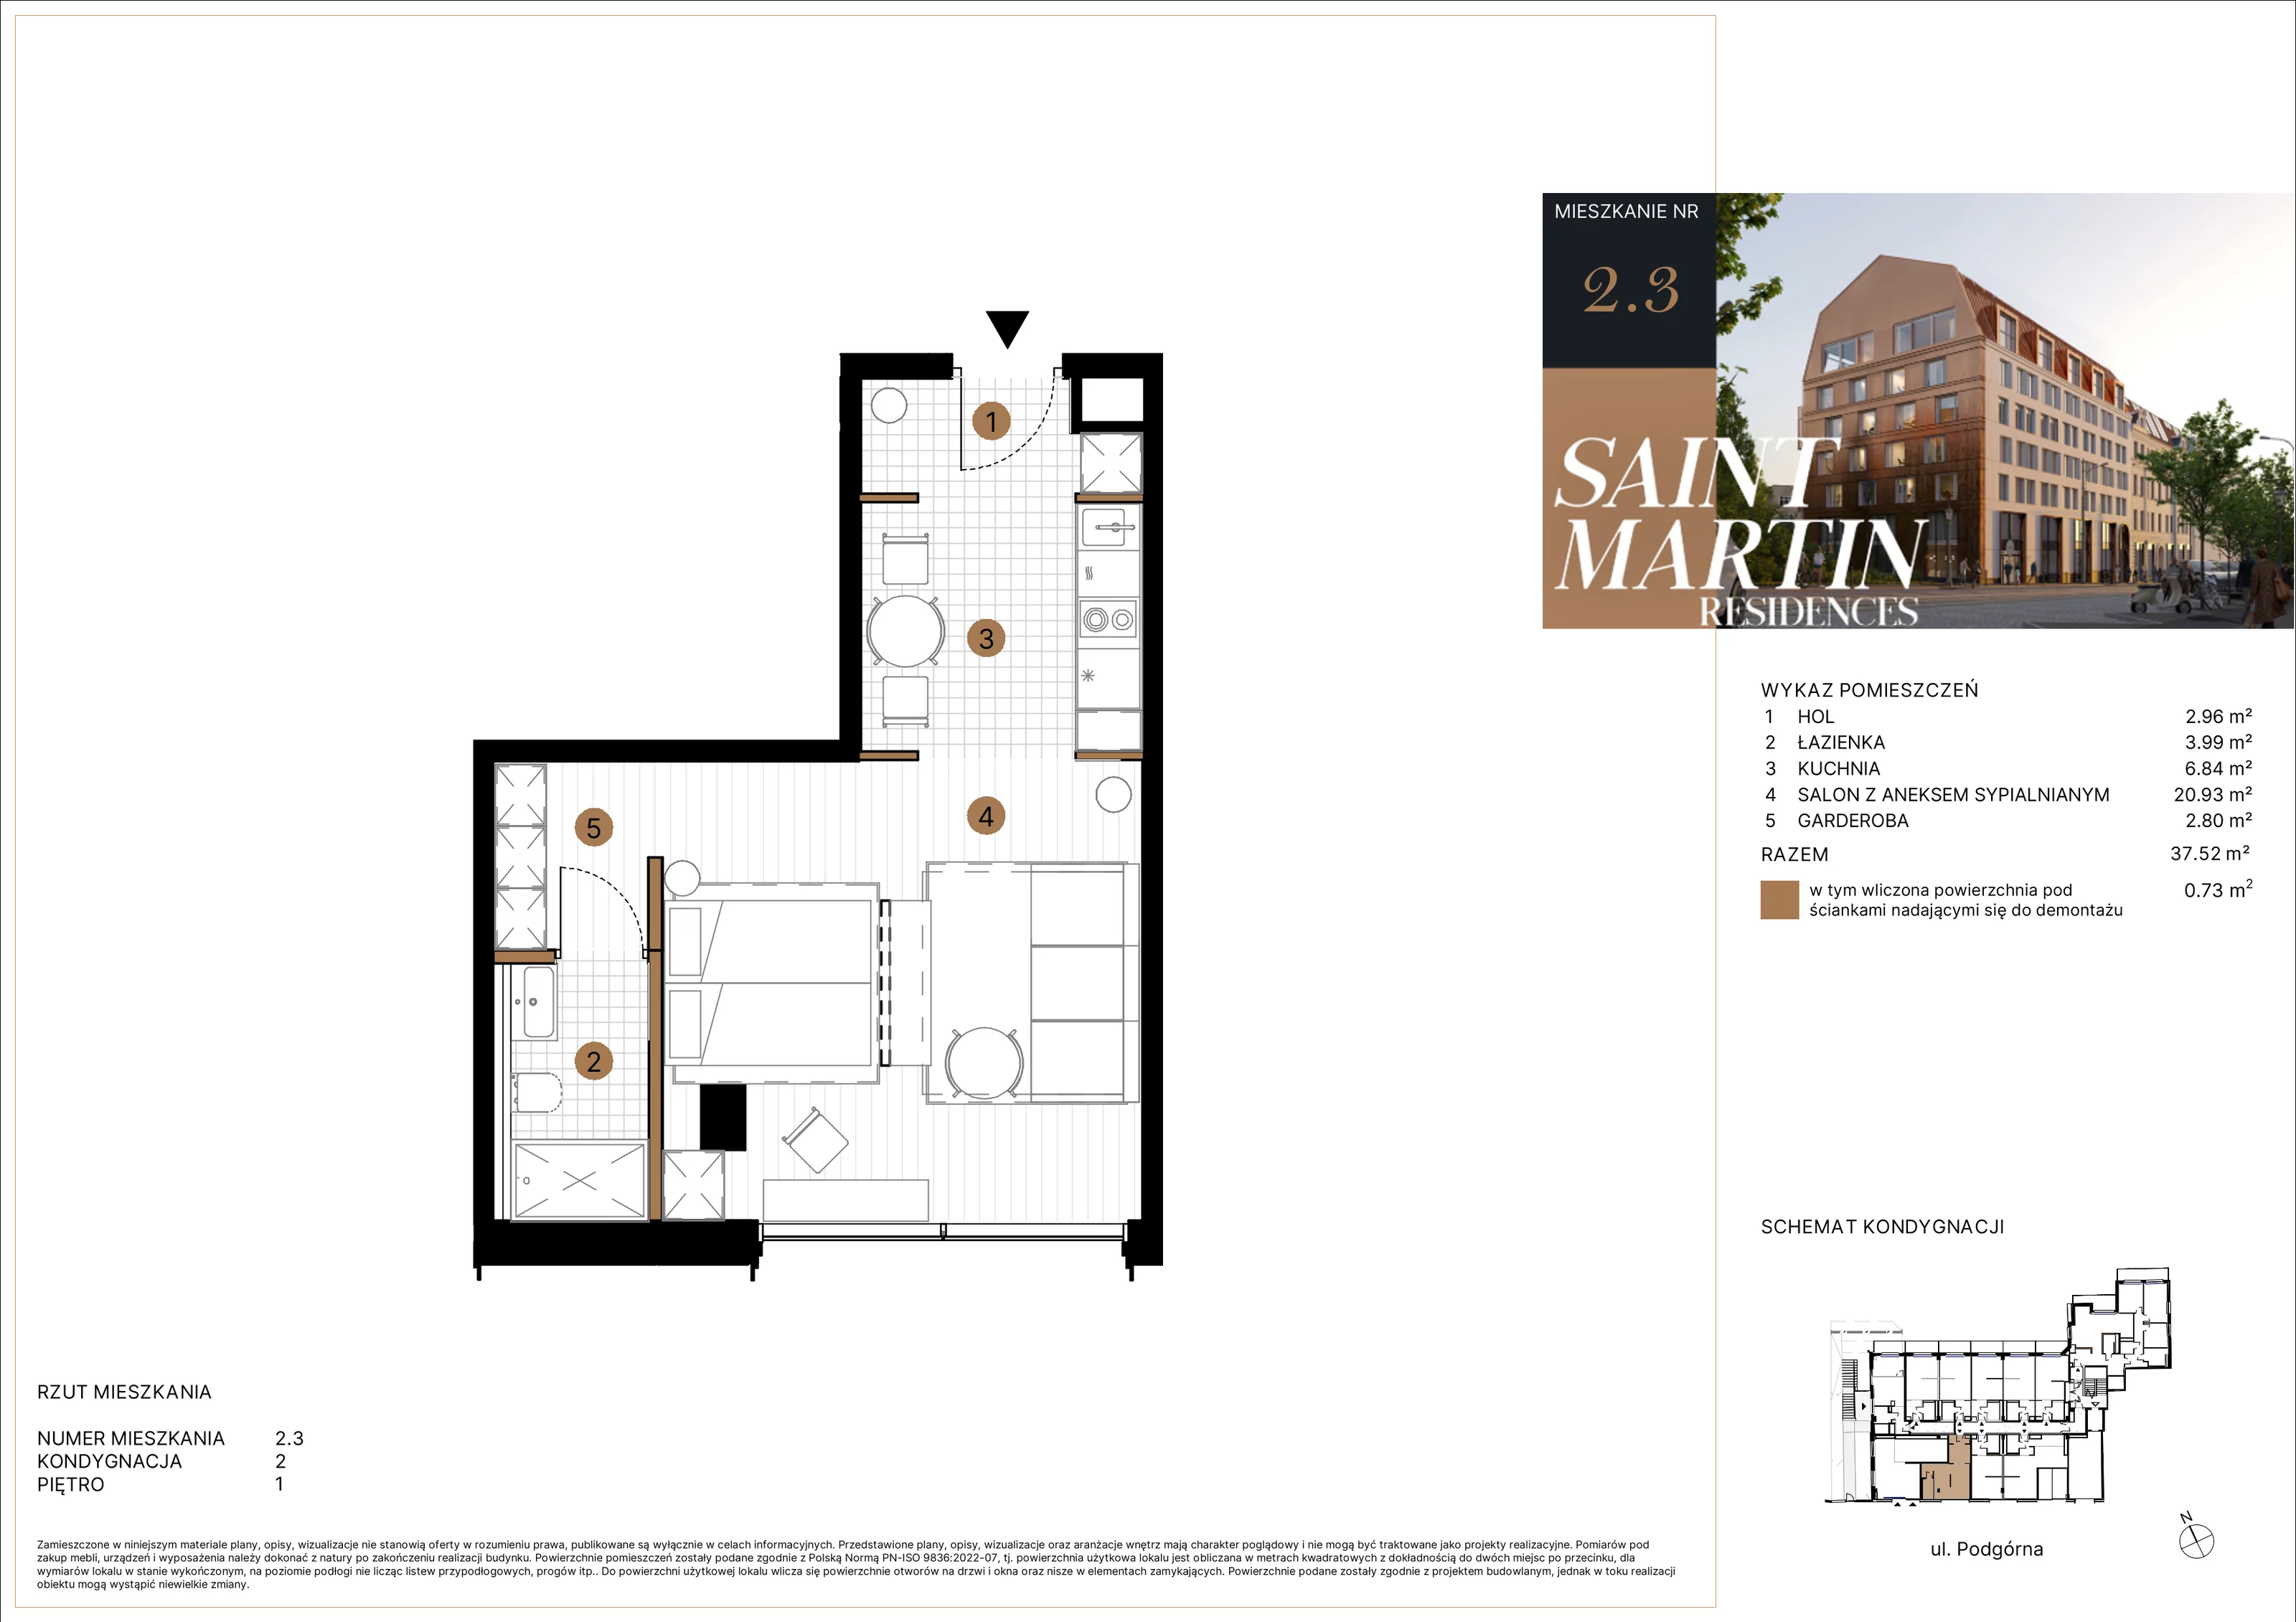 Mieszkanie 37,52 m², piętro 1, oferta nr A2.3, Saint Martin Residences II, Poznań, Stare Miasto, Stare Miasto, ul. Podgórna 7